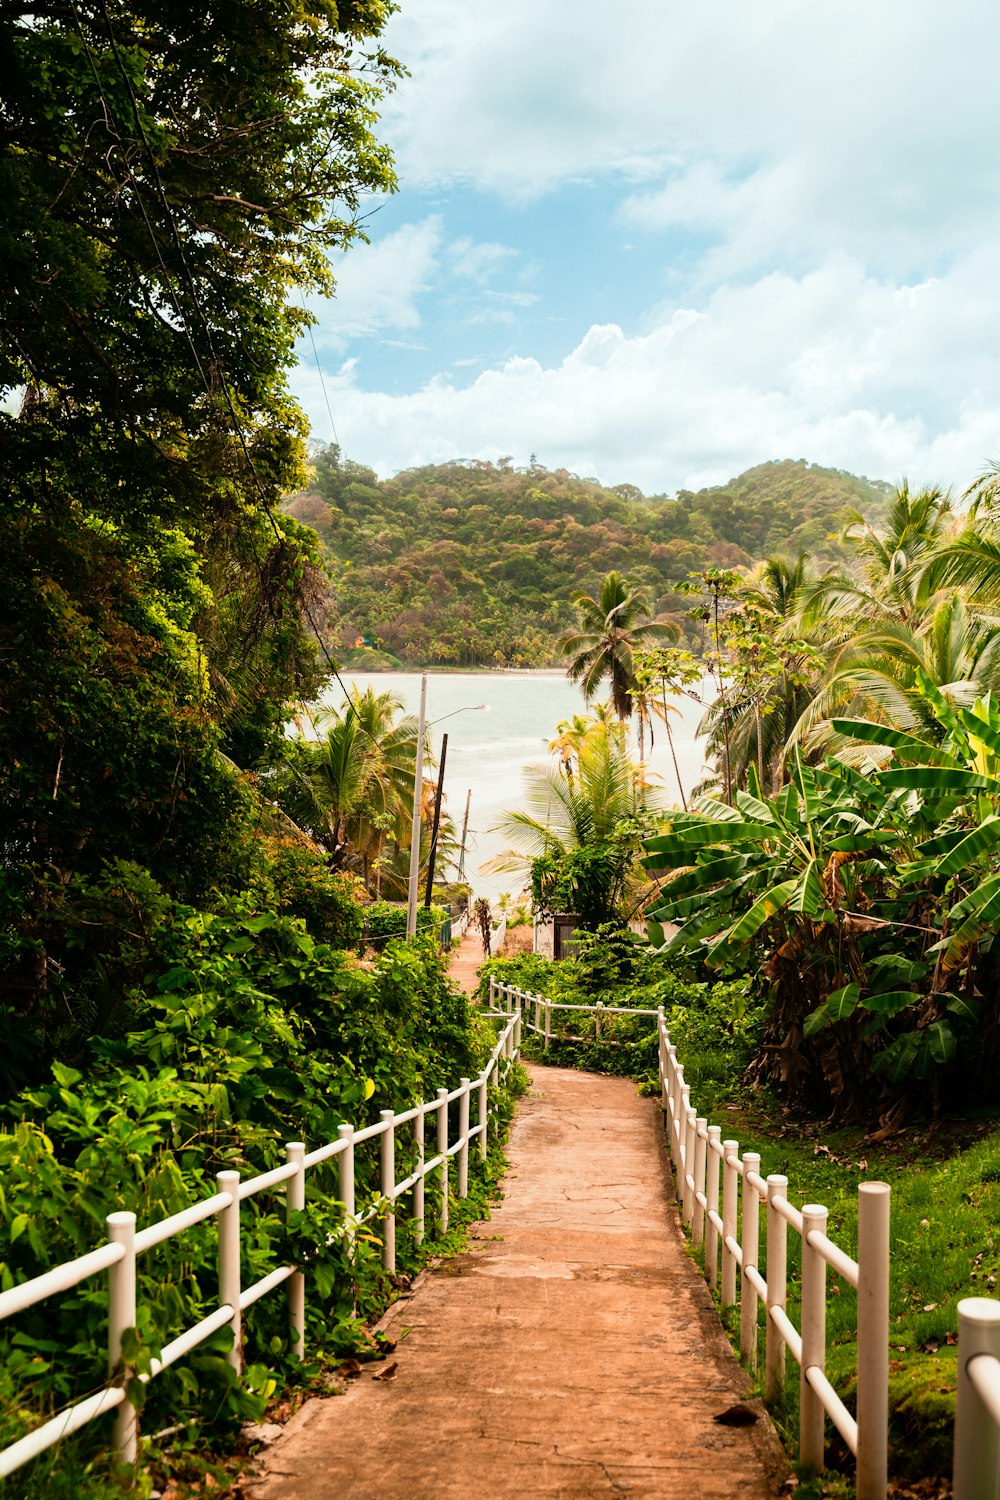 Un camino que conduce a una playa con palmeras